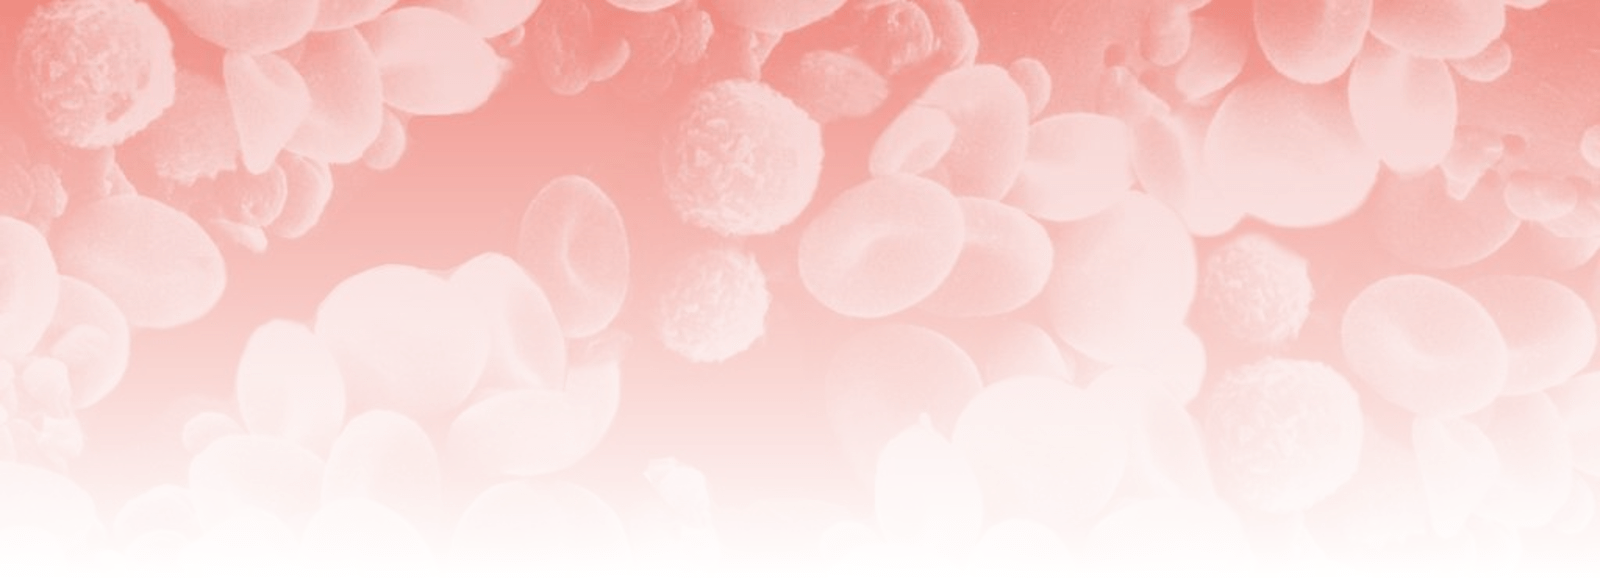 Circulation sanguine en microscopie électronique à balayage fond dégradé rose – site Santé Active Edition Synergy Pharm